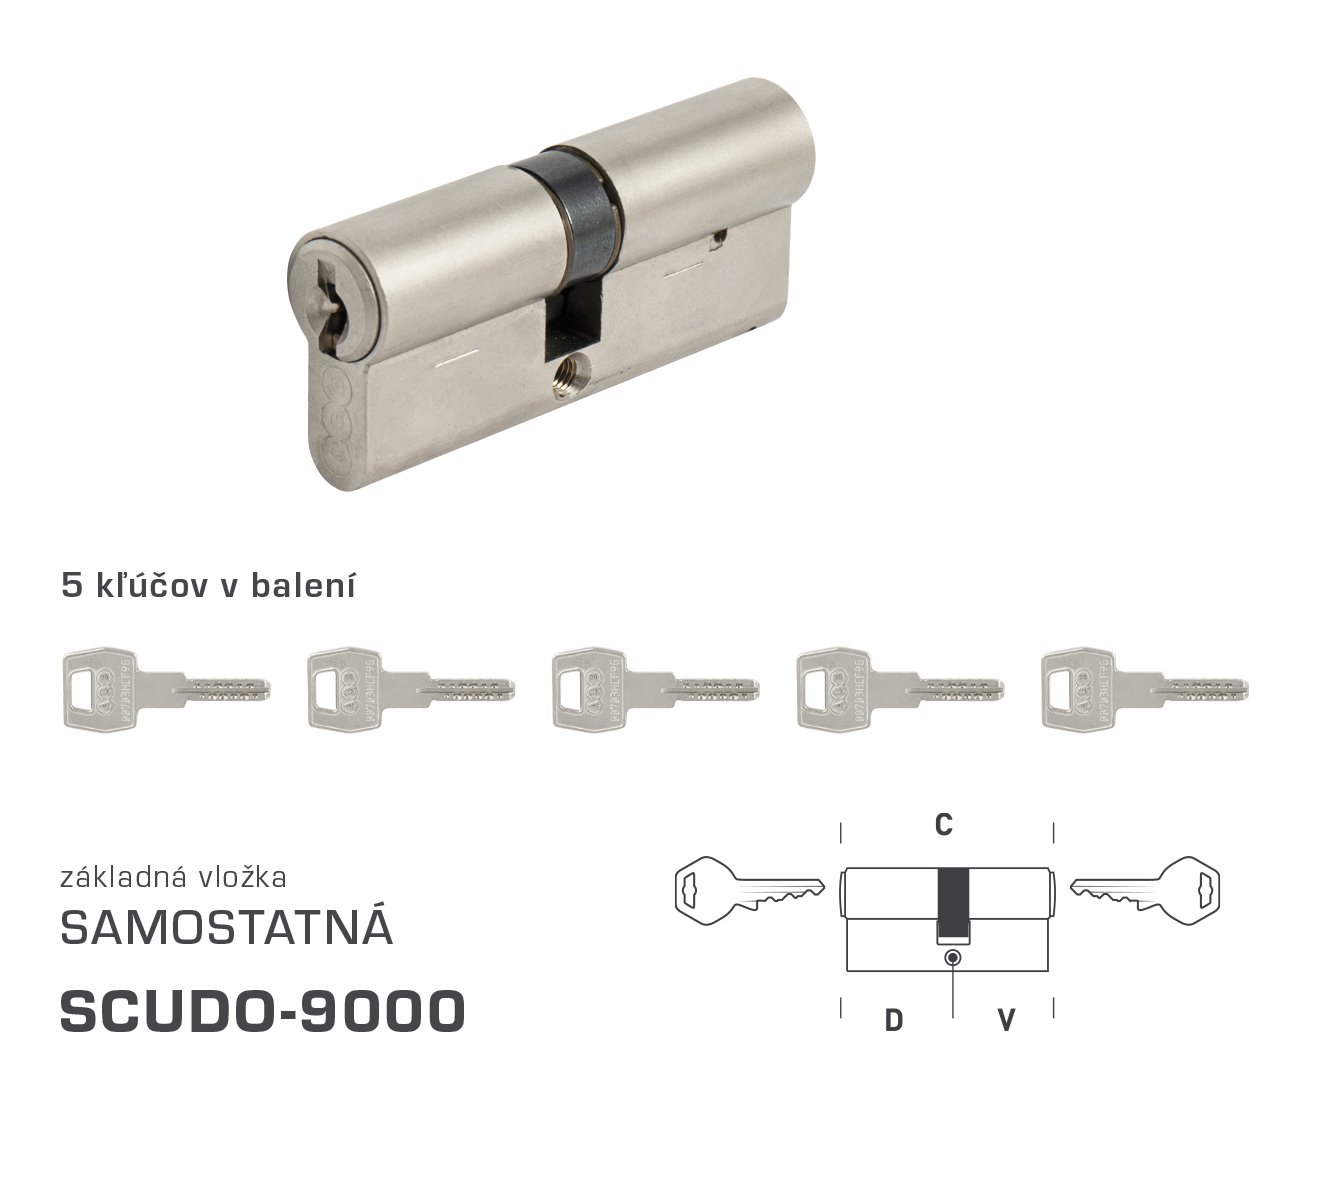 E-shop AGB - Vložka SCUDO 9000 S obojstranná cylindrická vložka 30+35 mm + 5x kľúč